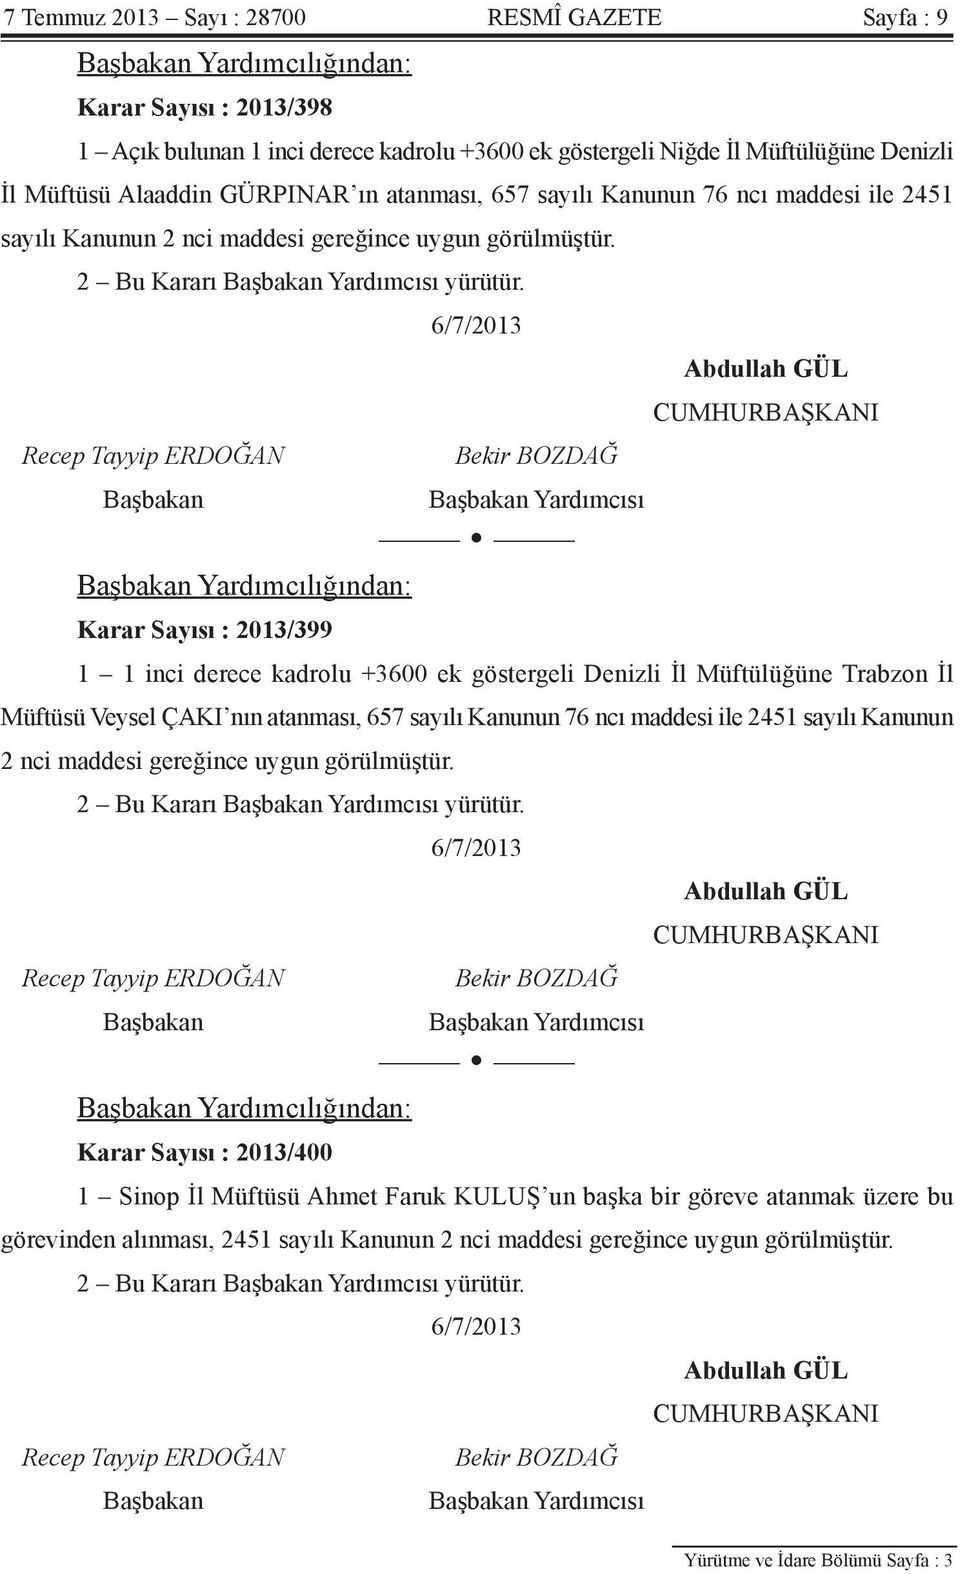 Yardımcısı Yardımcılığından: Karar Sayısı : 2013/399 1 1 inci derece kadrolu +3600 ek göstergeli Denizli İl Müftülüğüne Trabzon İl Müftüsü Veysel ÇAKI nın atanması, 657 sayılı Kanunun 76 ncı maddesi